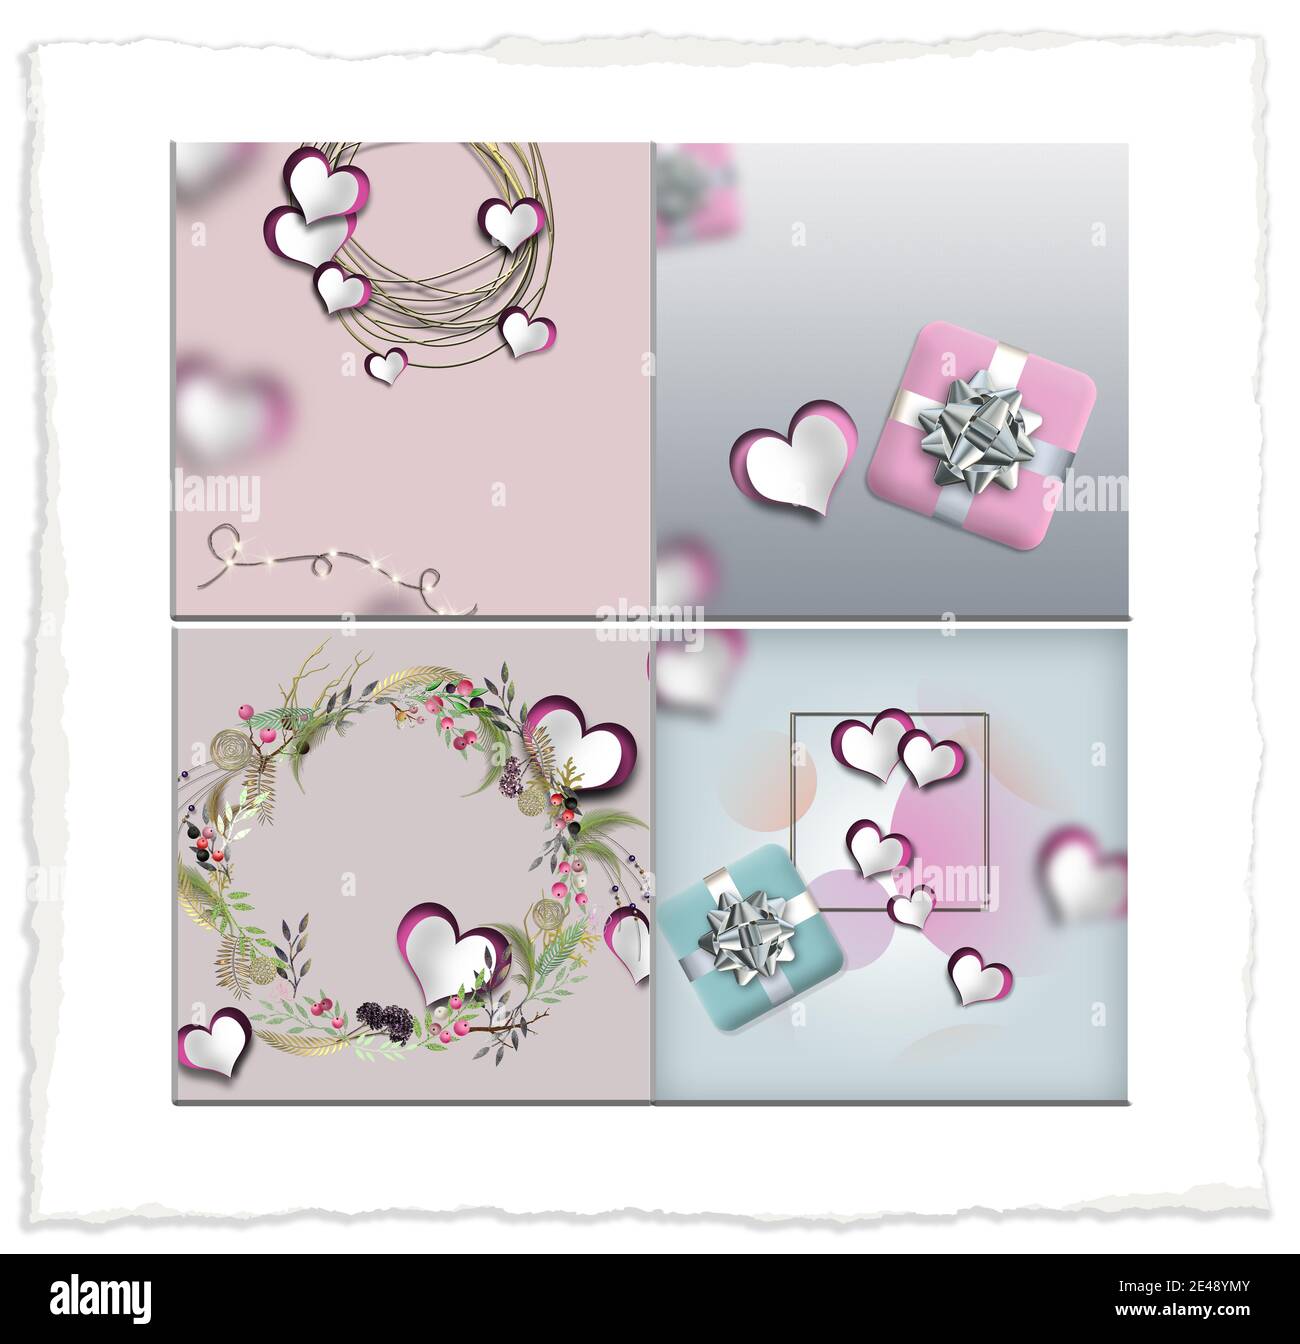 saint-valentin collage, coeurs, couleurs pastel. Coeurs en papier, boîte-cadeau, couronne fleurie sur fond pastel. illustration 3d Banque D'Images